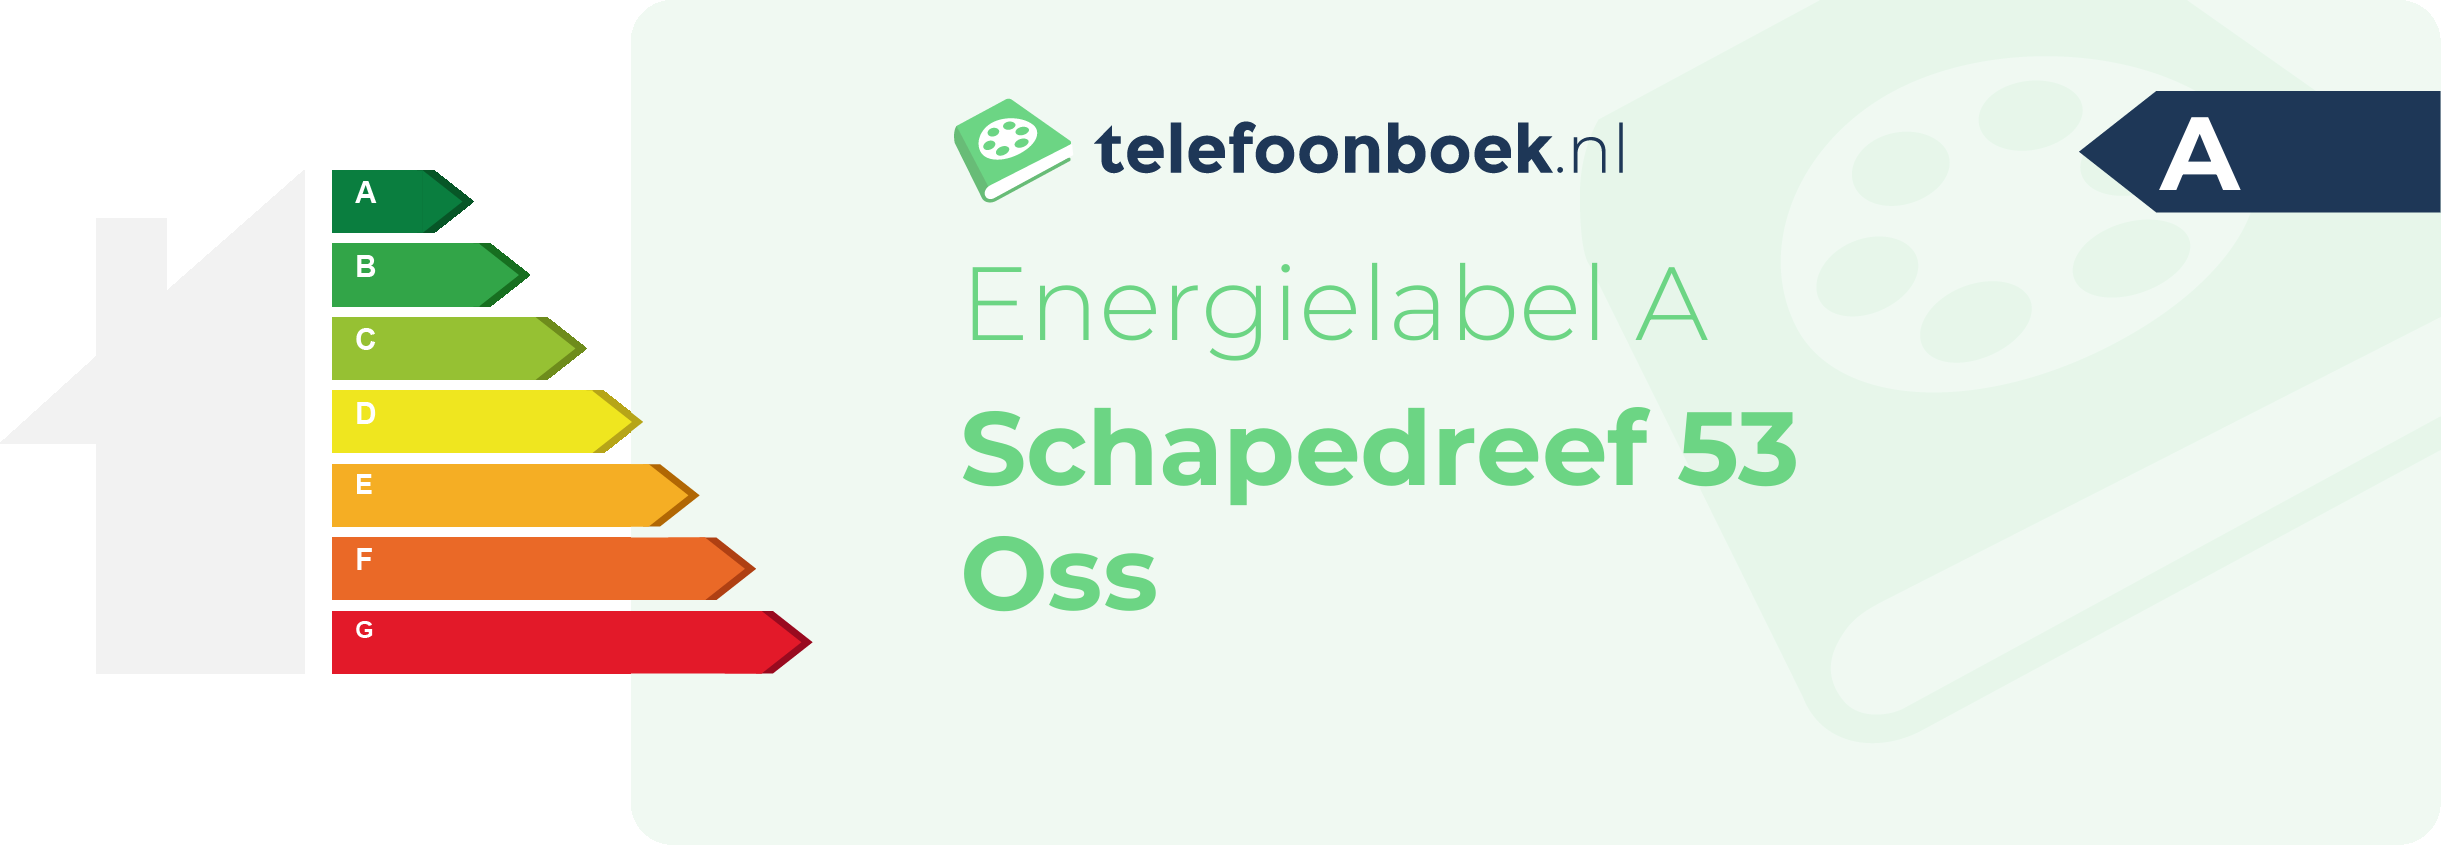 Energielabel Schapedreef 53 Oss